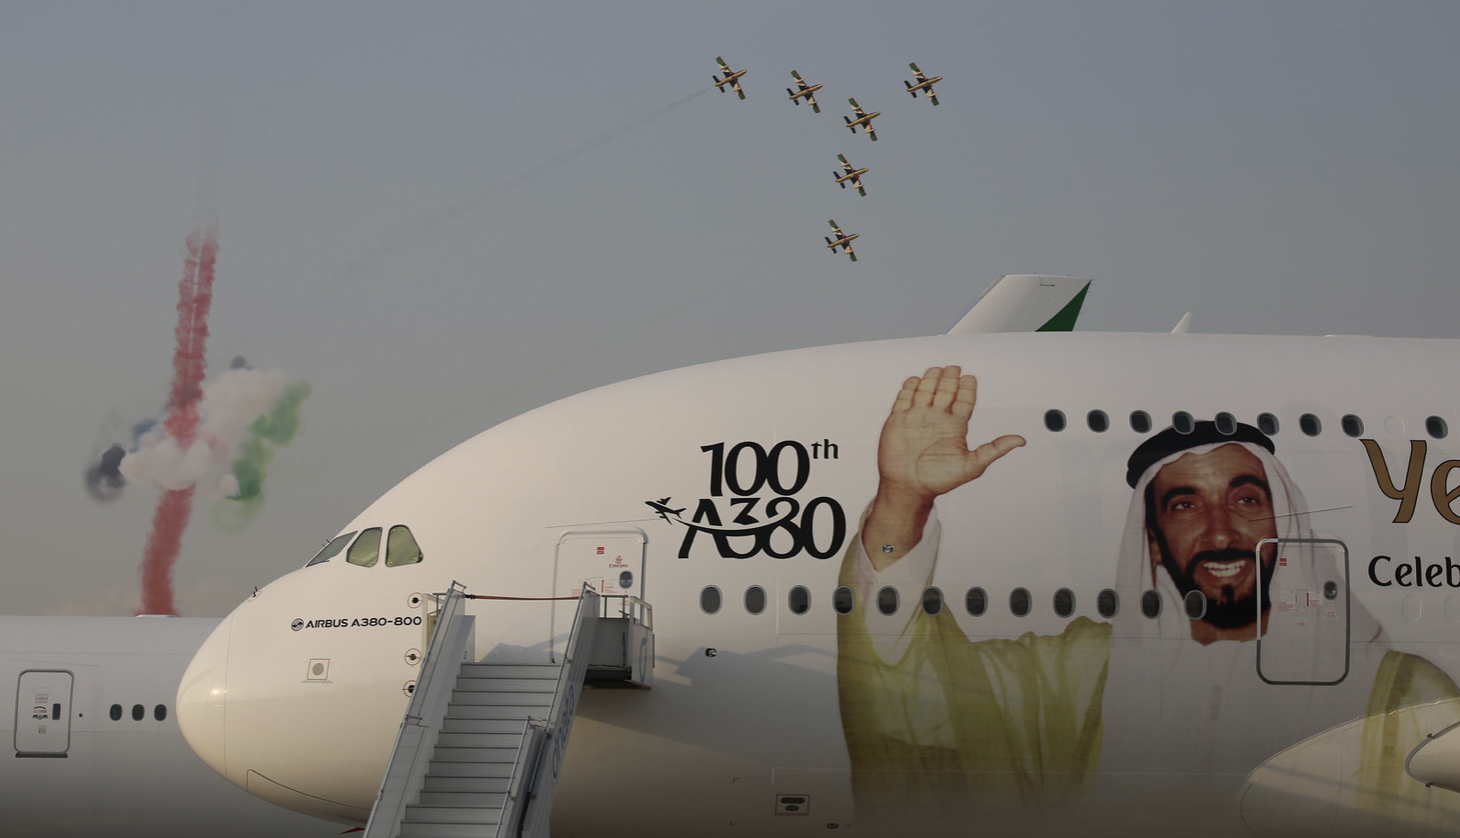 DUBAI AIRSHOW 2021: SUE ALTEZZE E ALTEZZE VERE IN PIEDI (FEET)